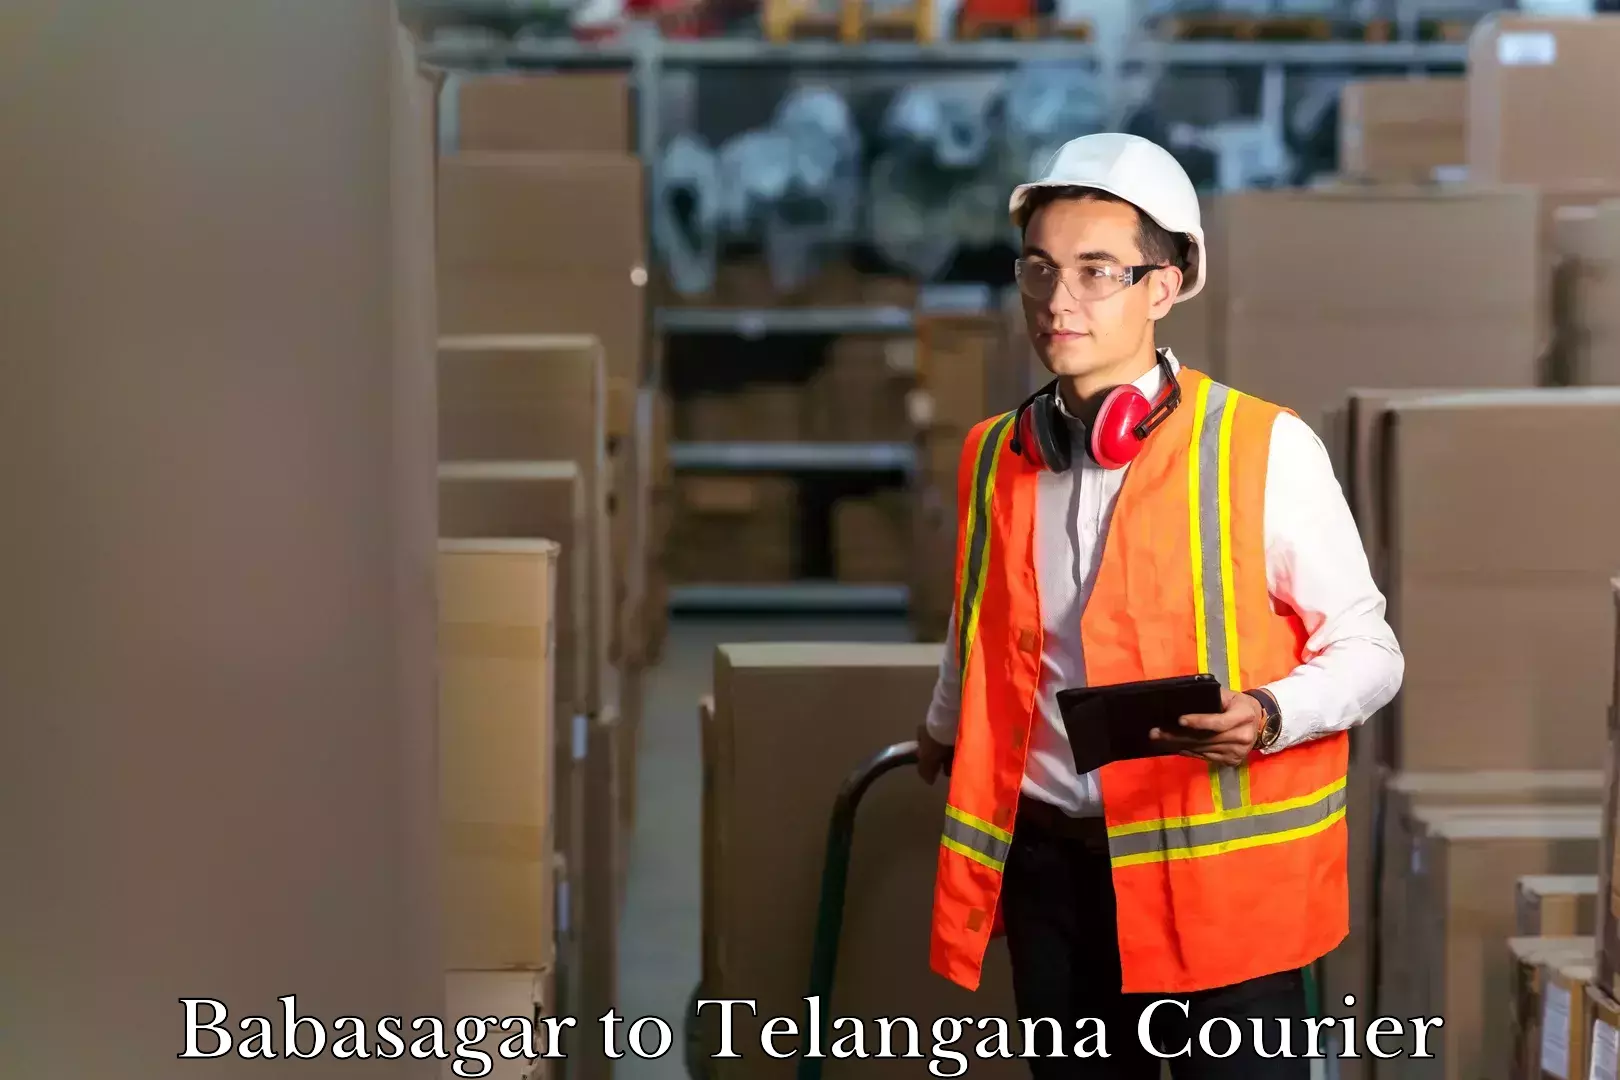 Baggage transport scheduler Babasagar to Telangana